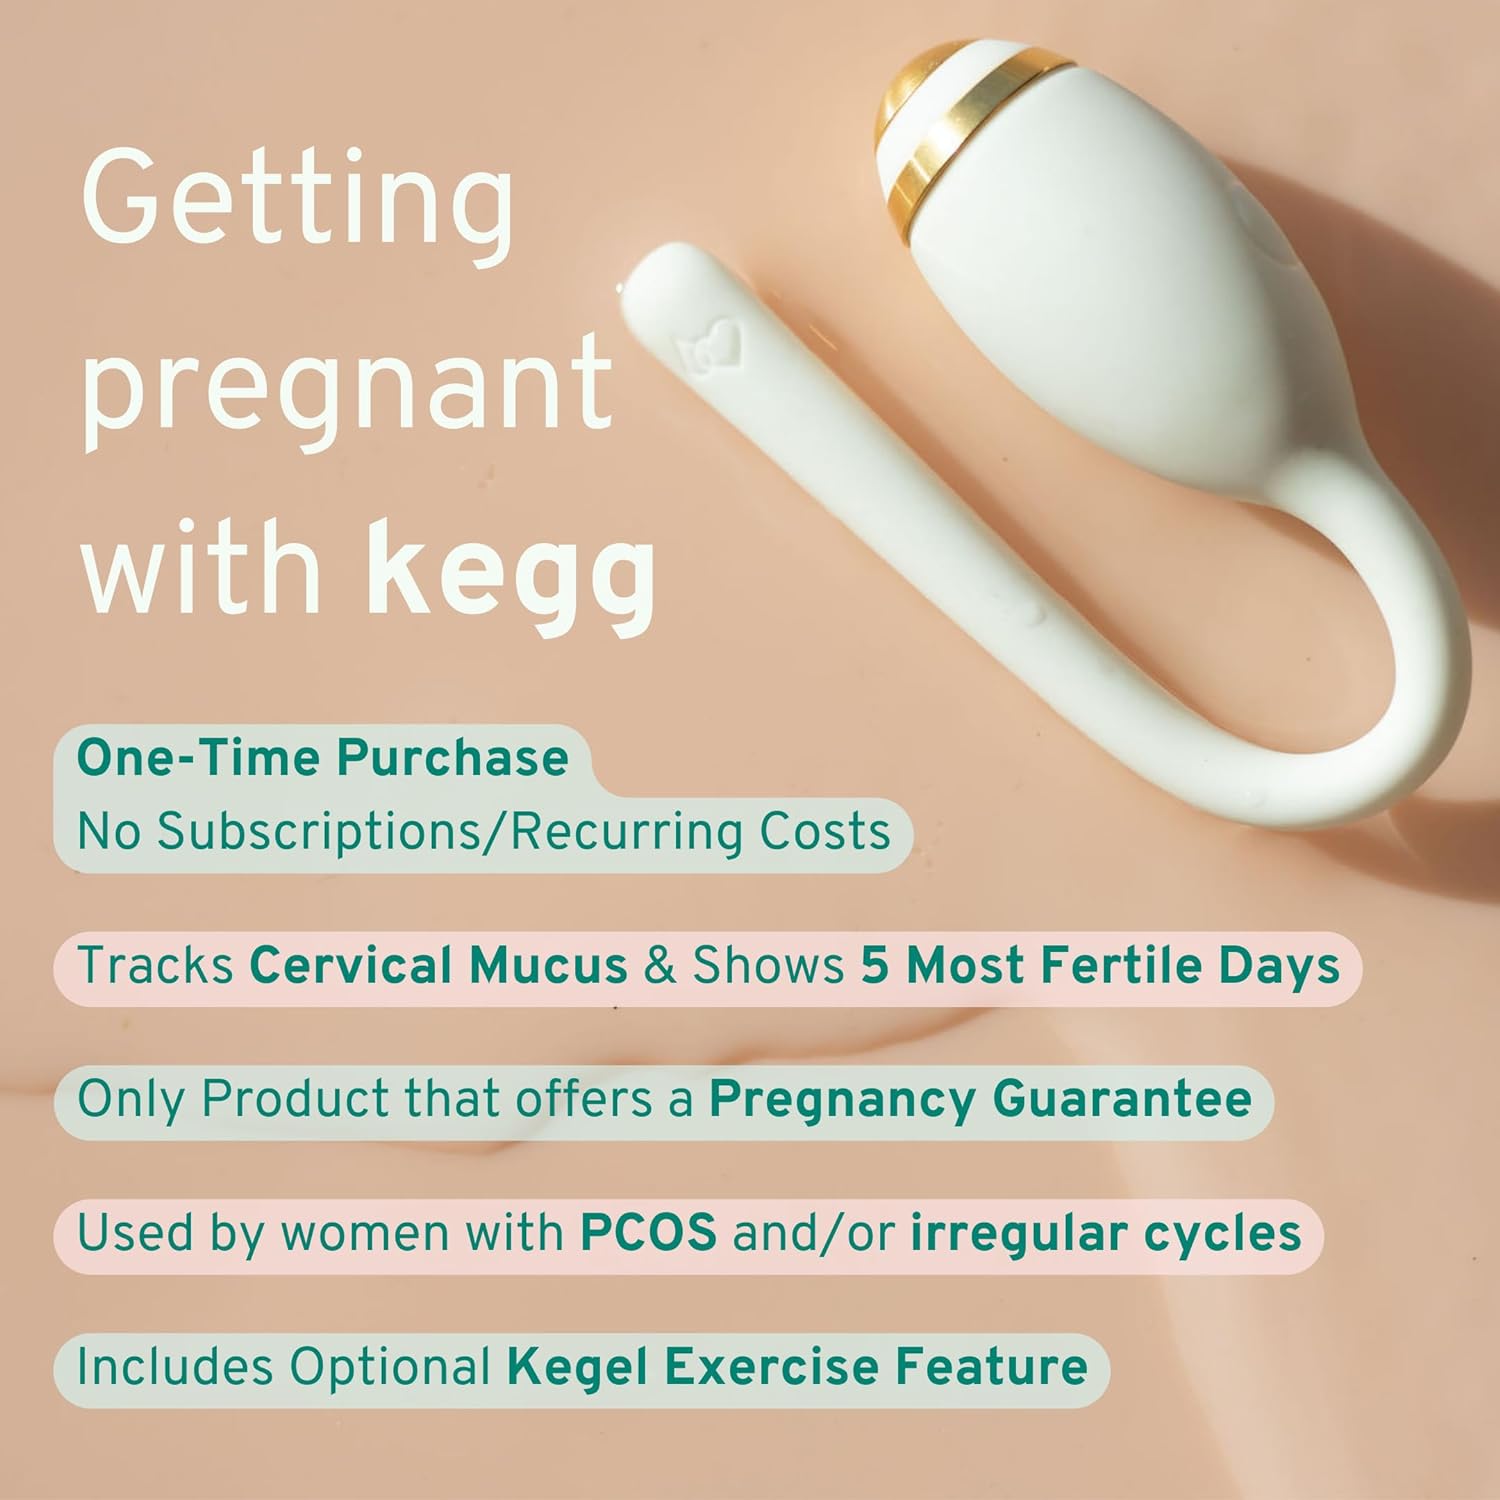 kegg fertility tracker and kegel ball